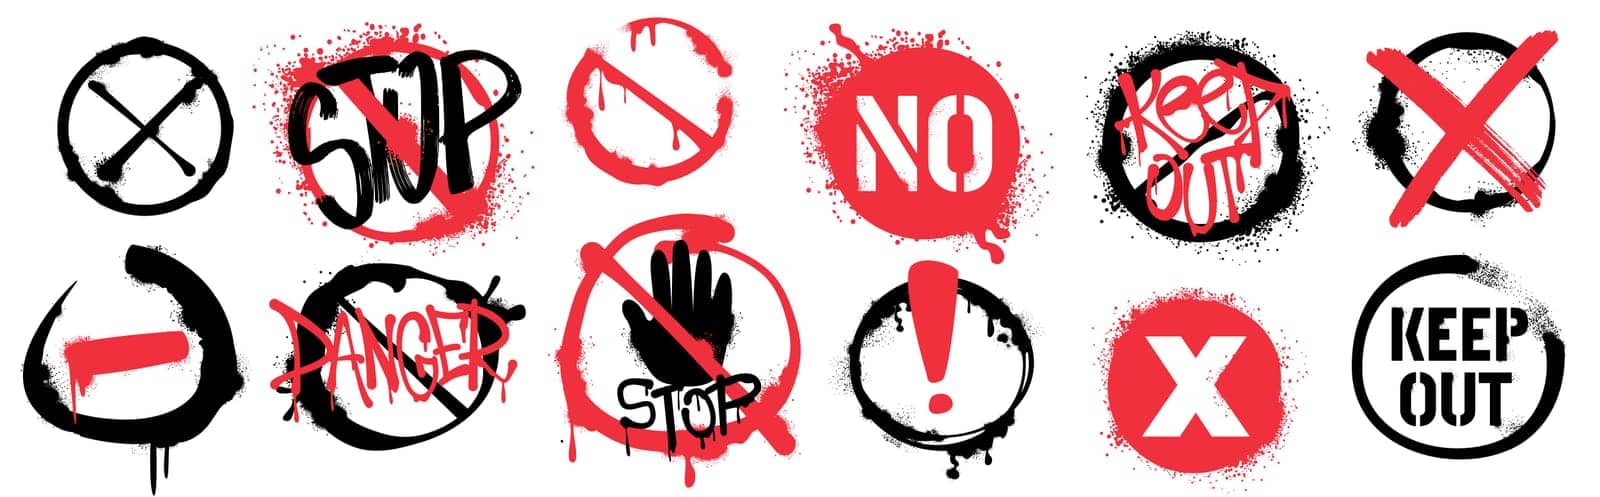 Spray paint graffiti warning signs or forbidden symbols by Redgreystock